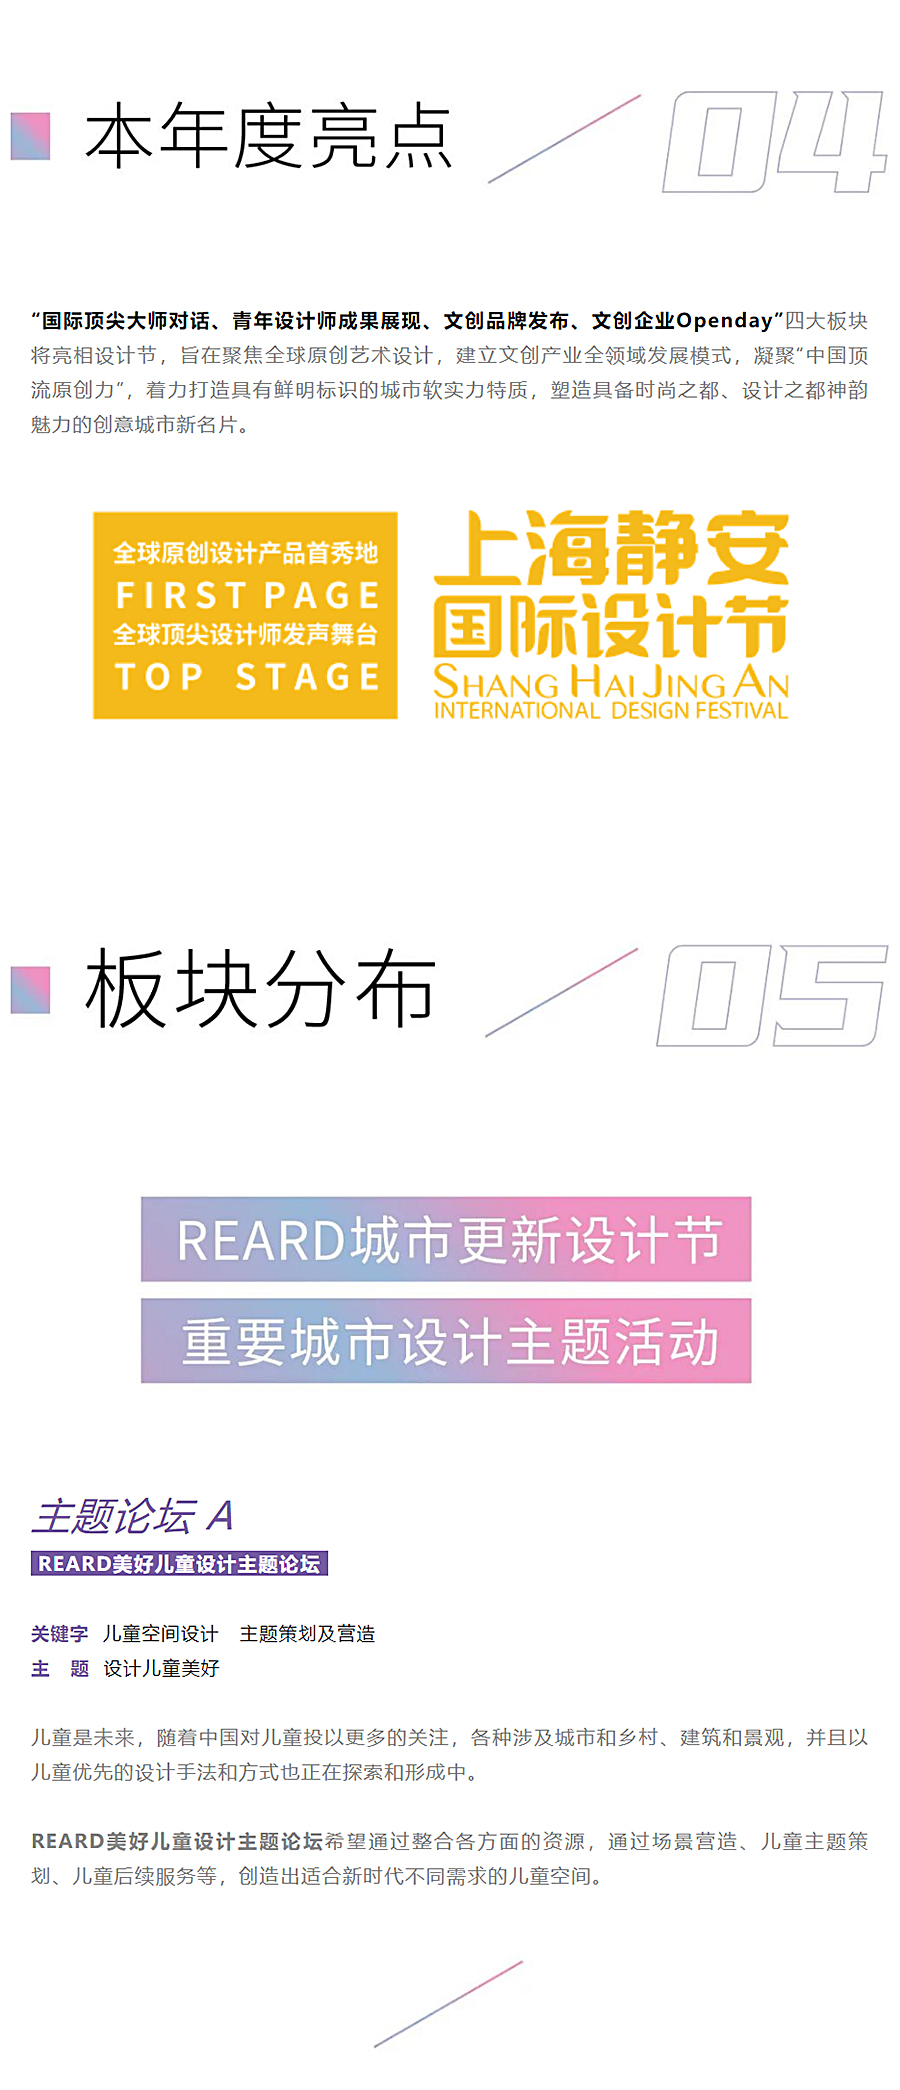 瞰见艺术的力量：上海静安国际设计节｜REARD城市更新设计节来袭_0004_图层-5.jpg